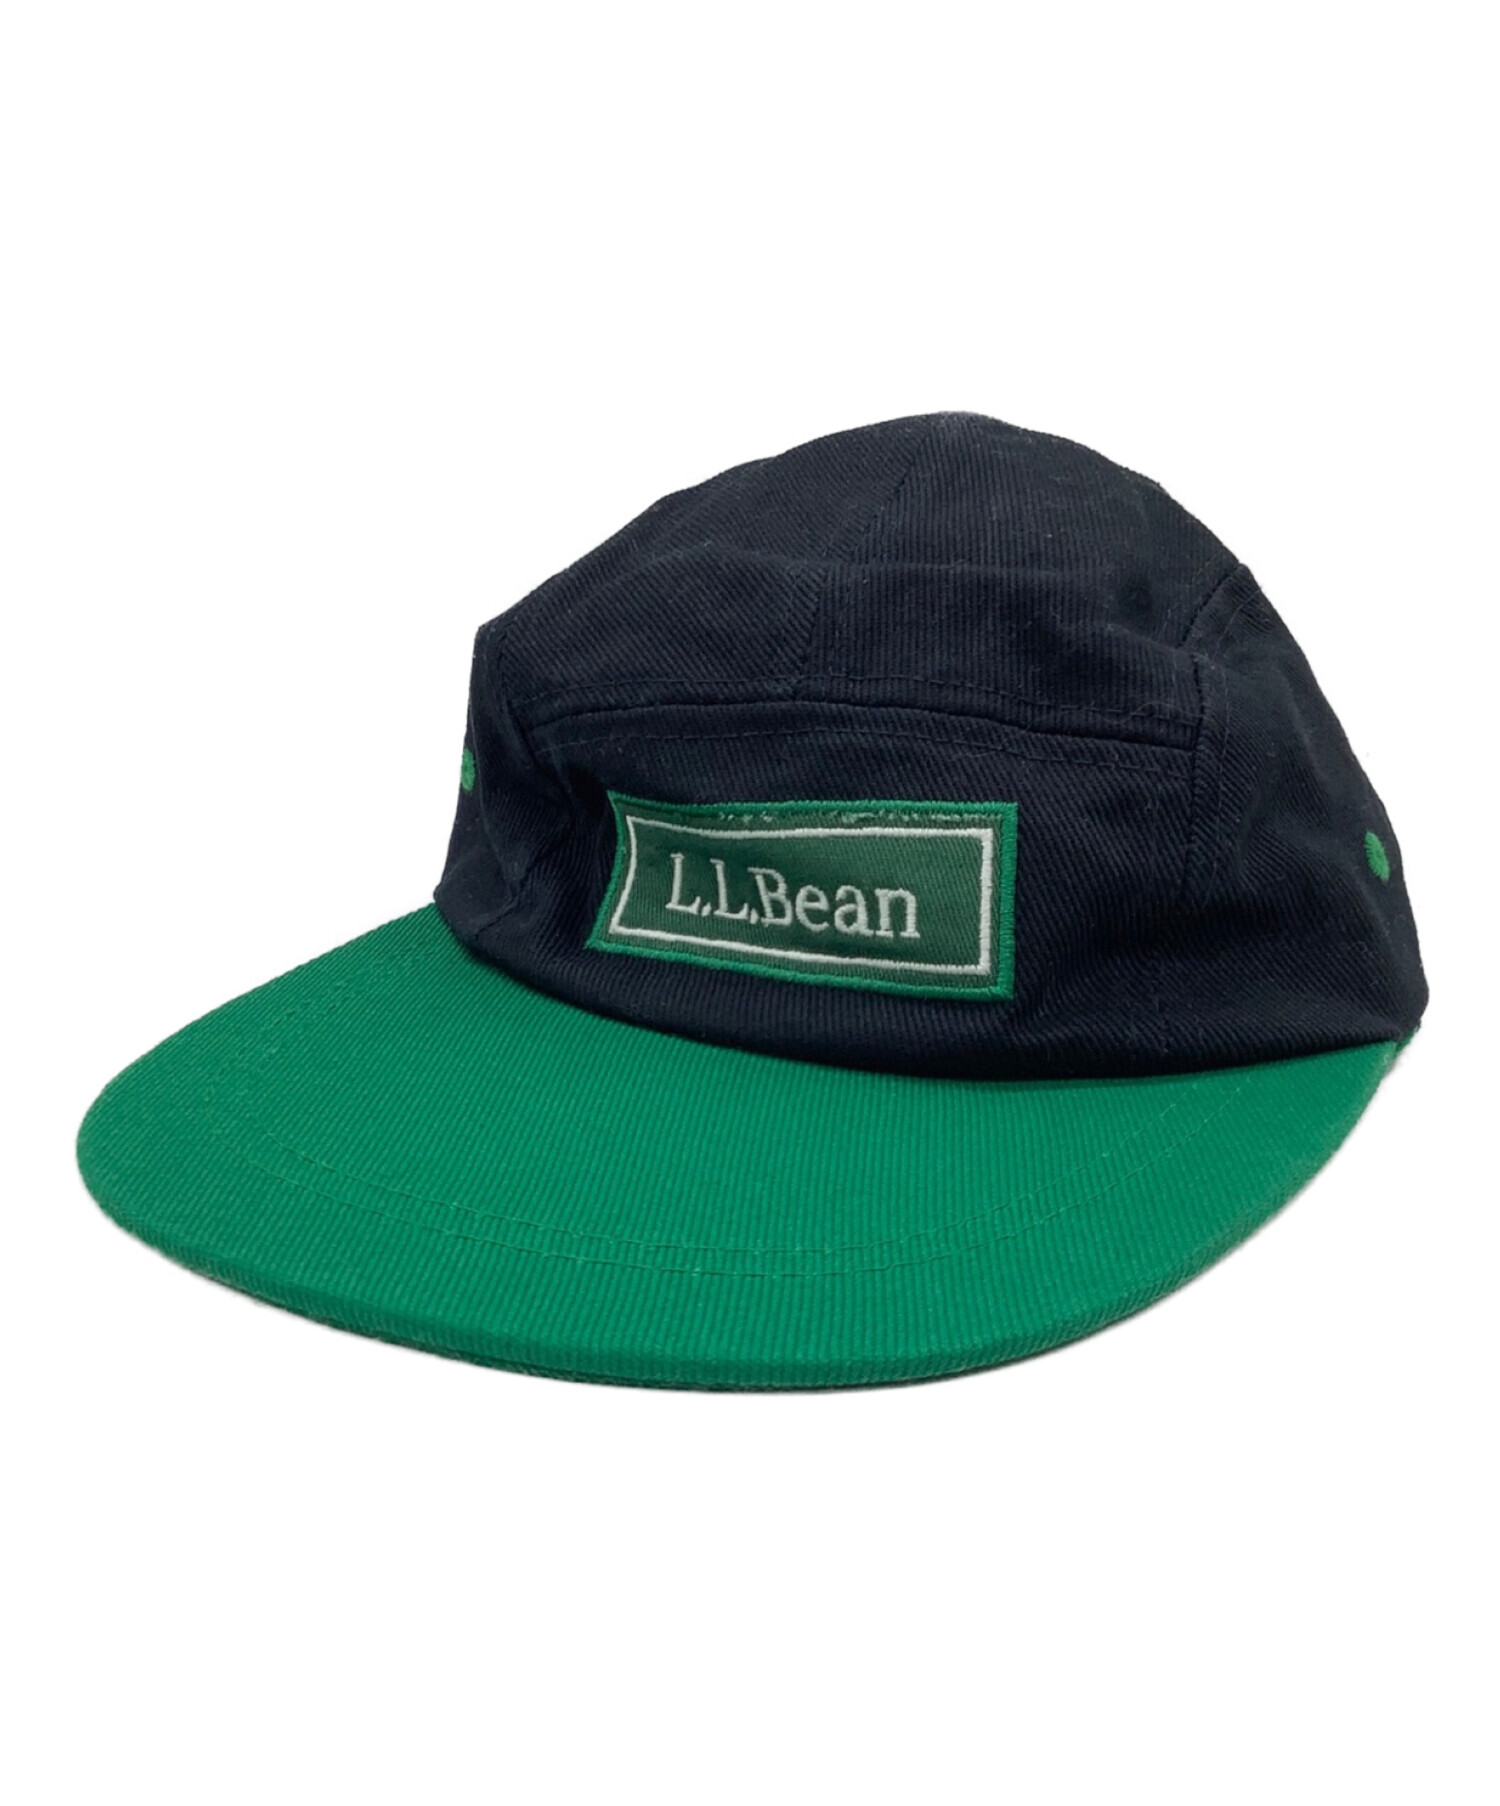 L.L.Bean (エルエルビーン) キャップ ブラック×グリーン